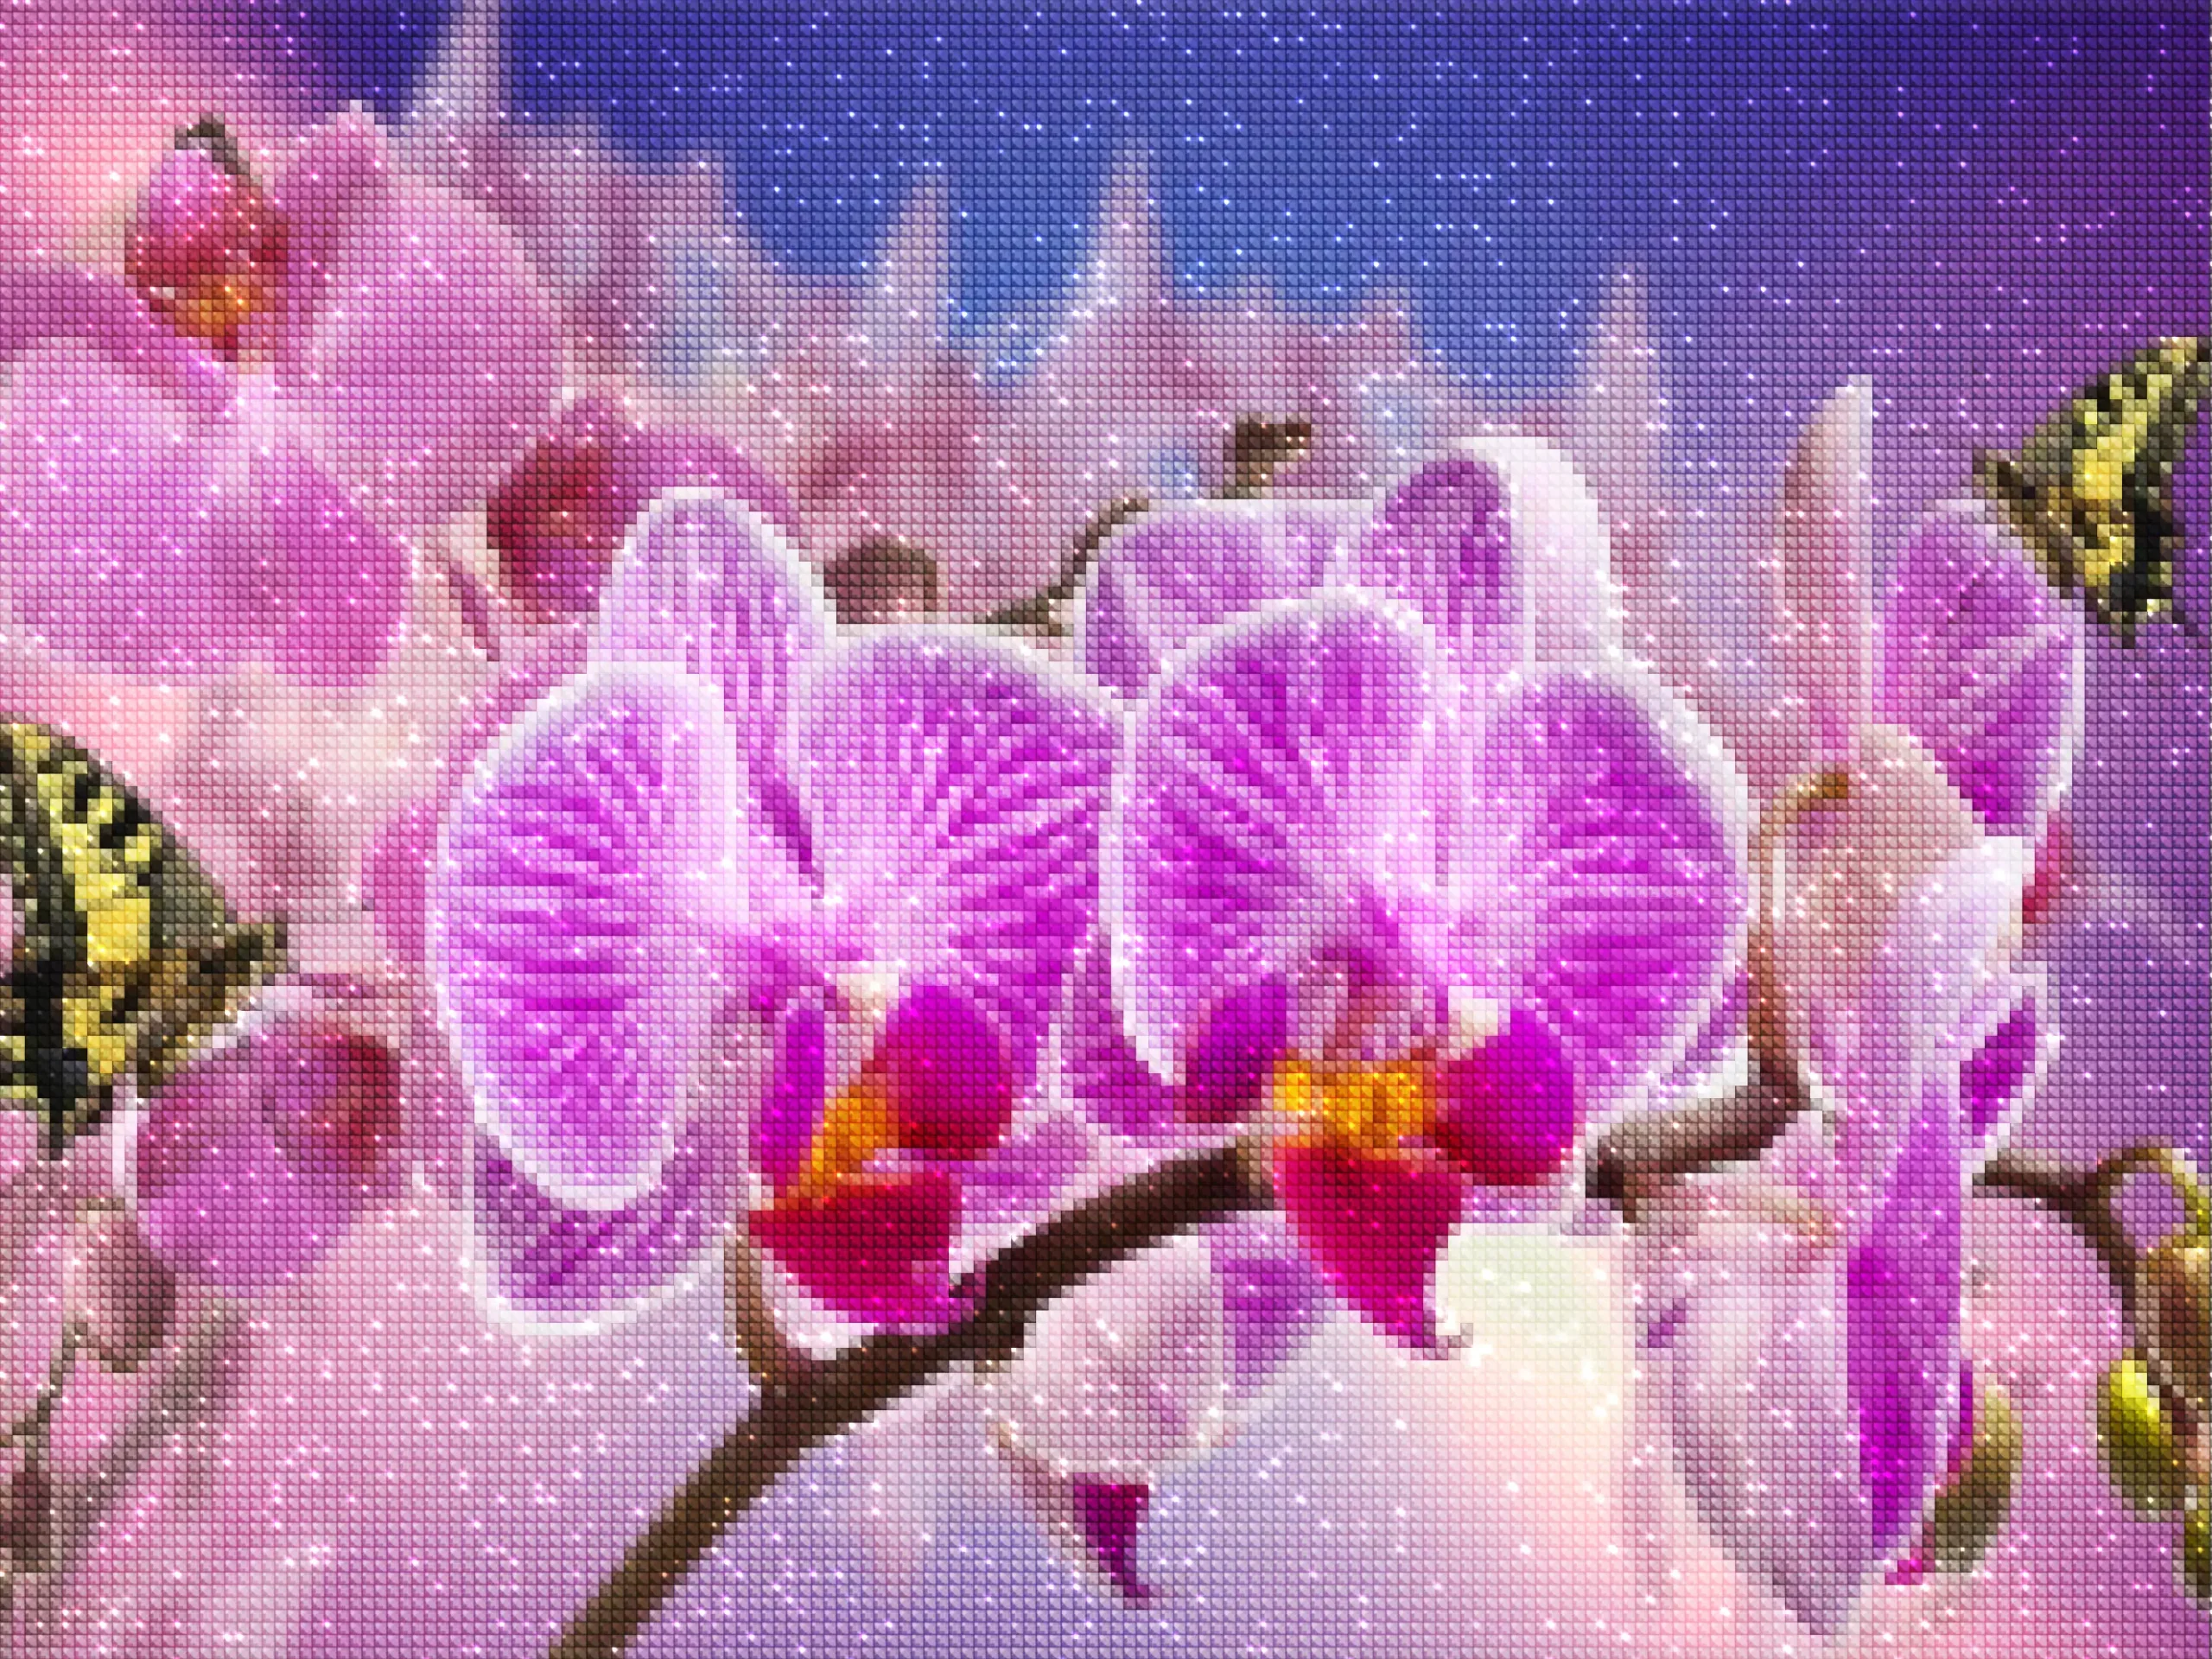 diamants-wizard-diamond-painting-kits-Animaux-Papillon-Orchidées violettes avec papillons-diamonds.webp